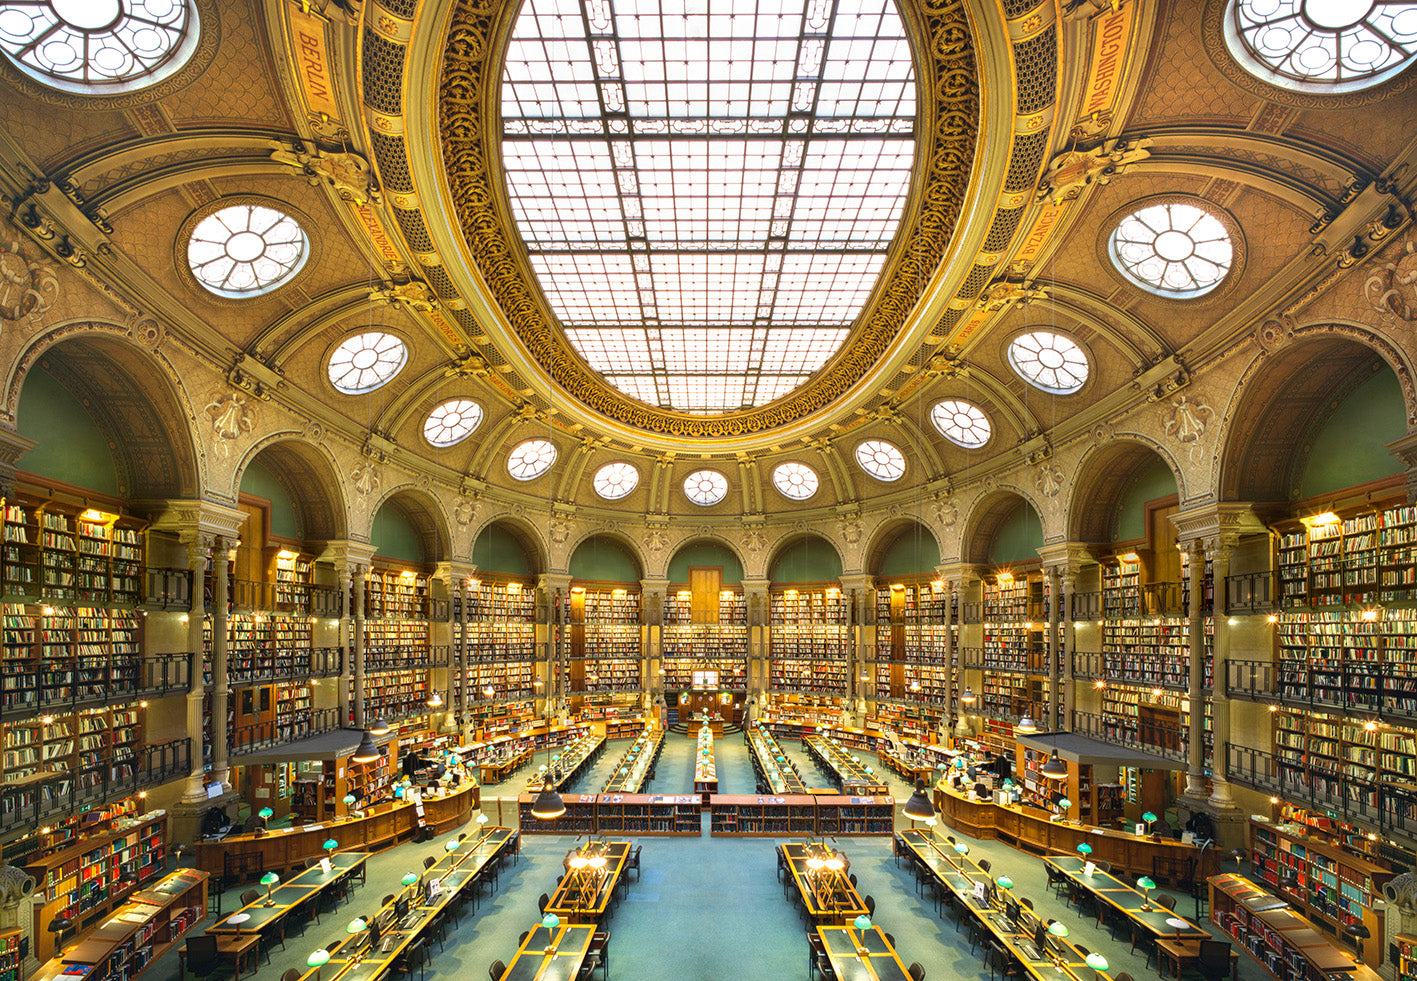 bibliothèque nationale de france